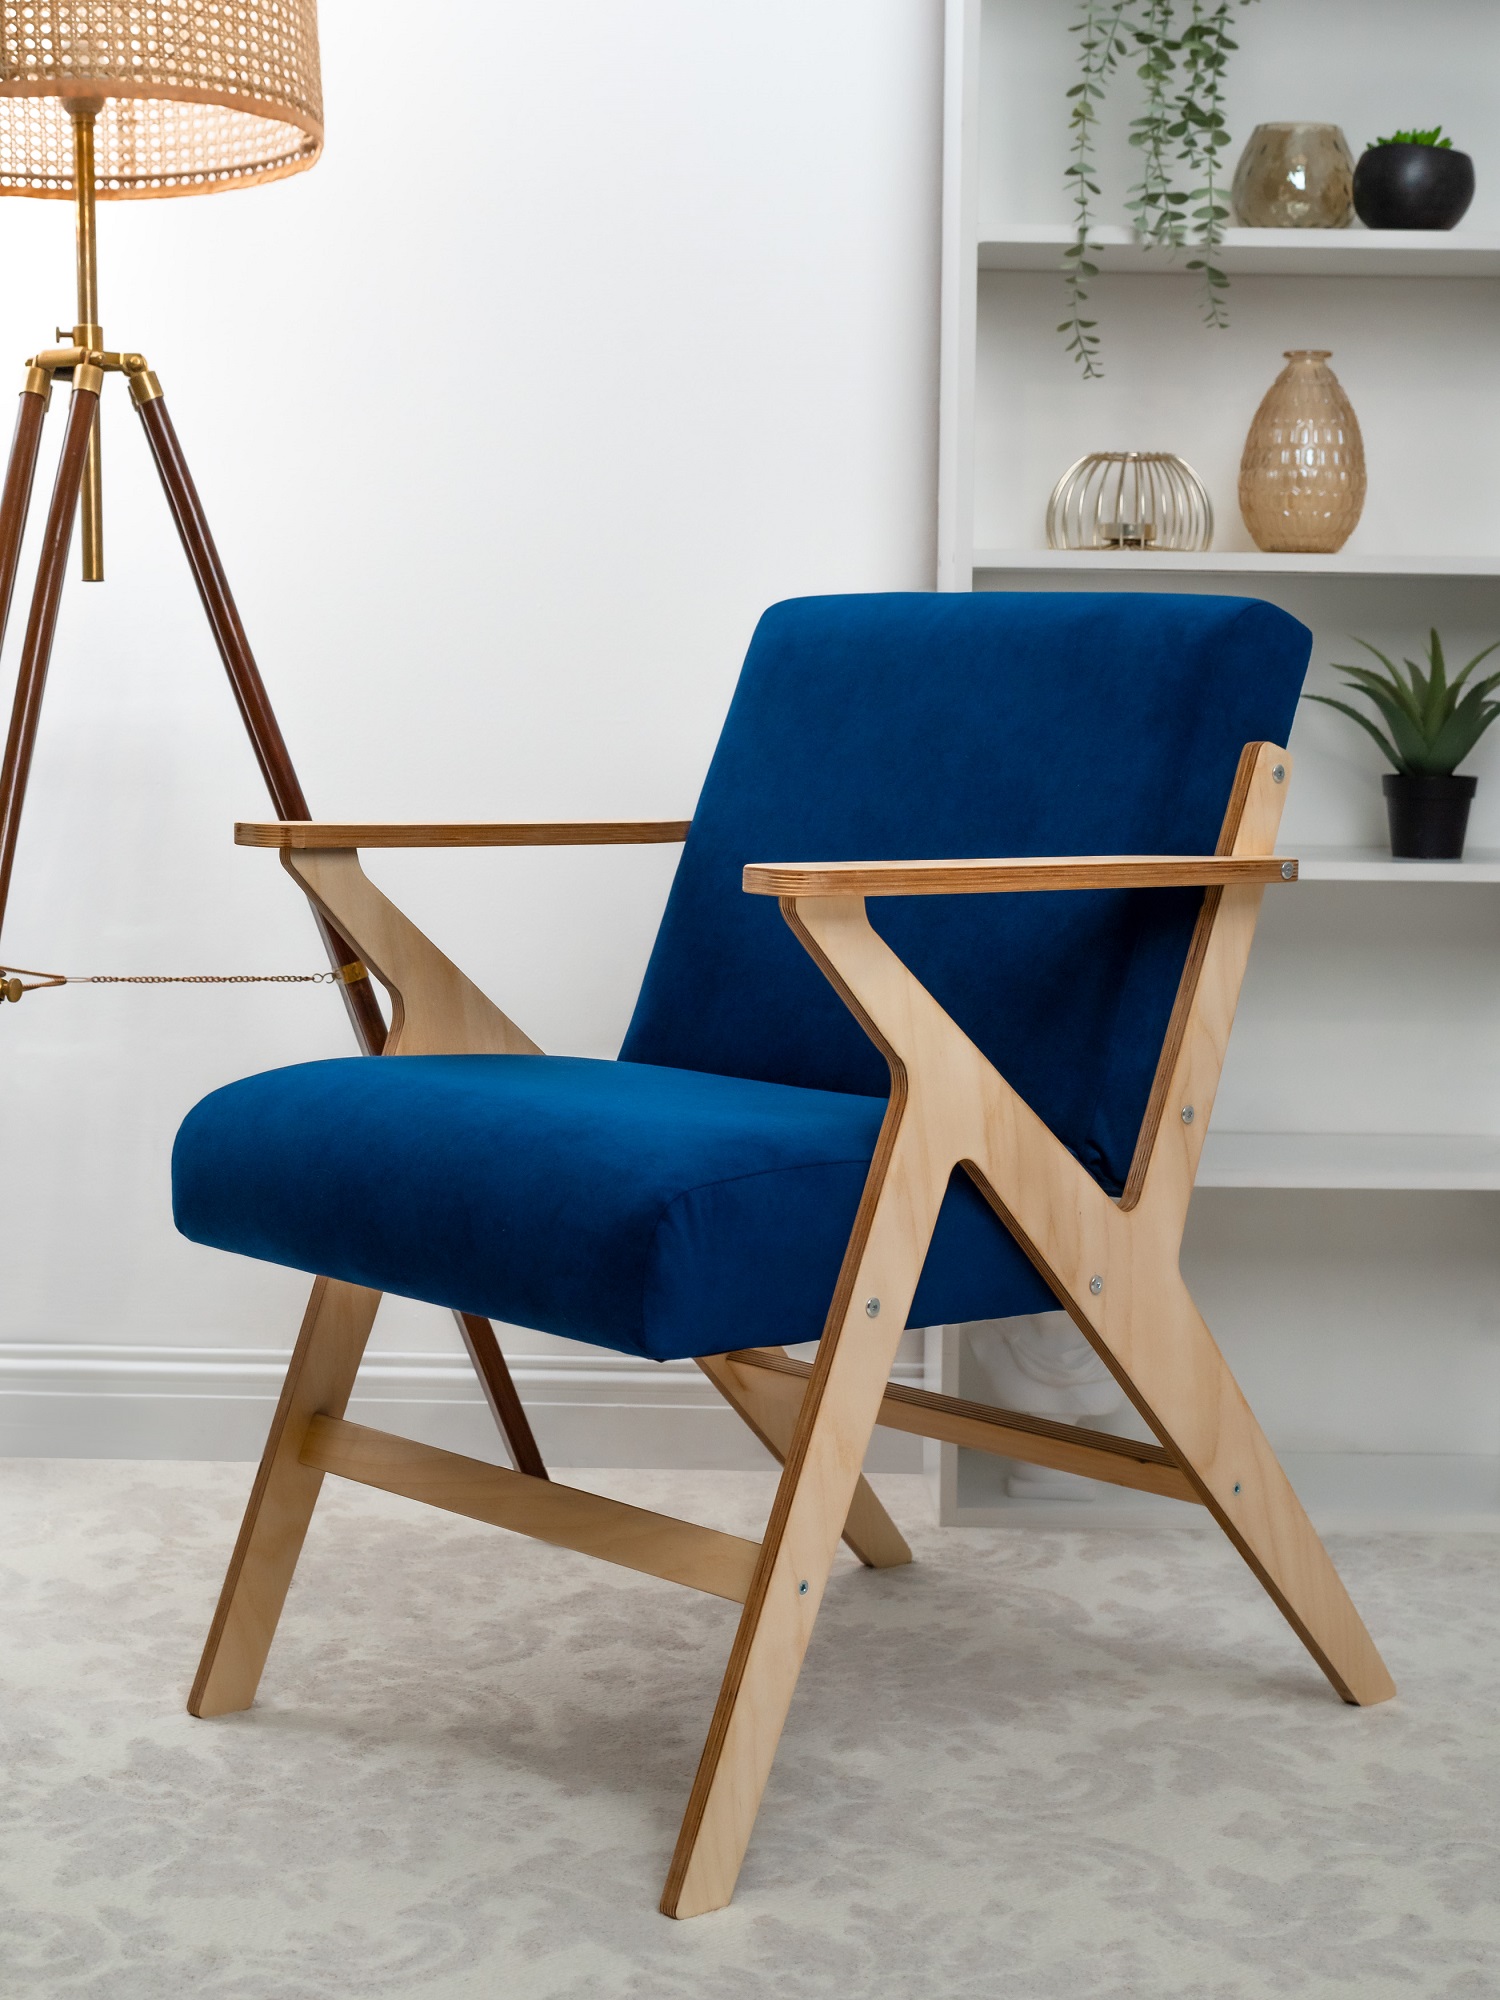 Эксклюзивный дизайн и онлайн-продажи – новые тенденции мебельного рынка